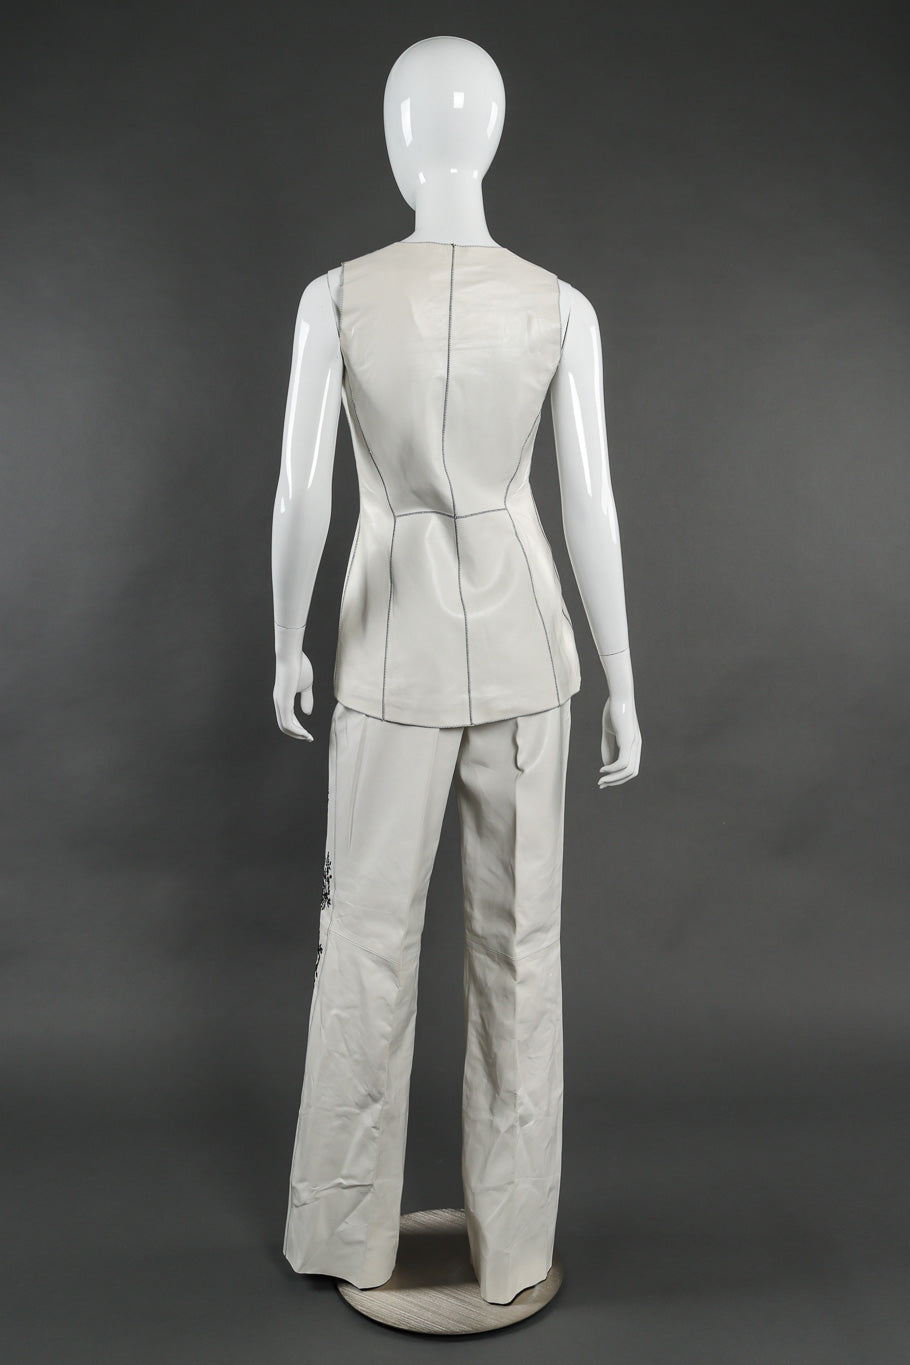 Vintage Estrella G Embroidered Leather Vest and Pant Set back view on mannequin @Recessla